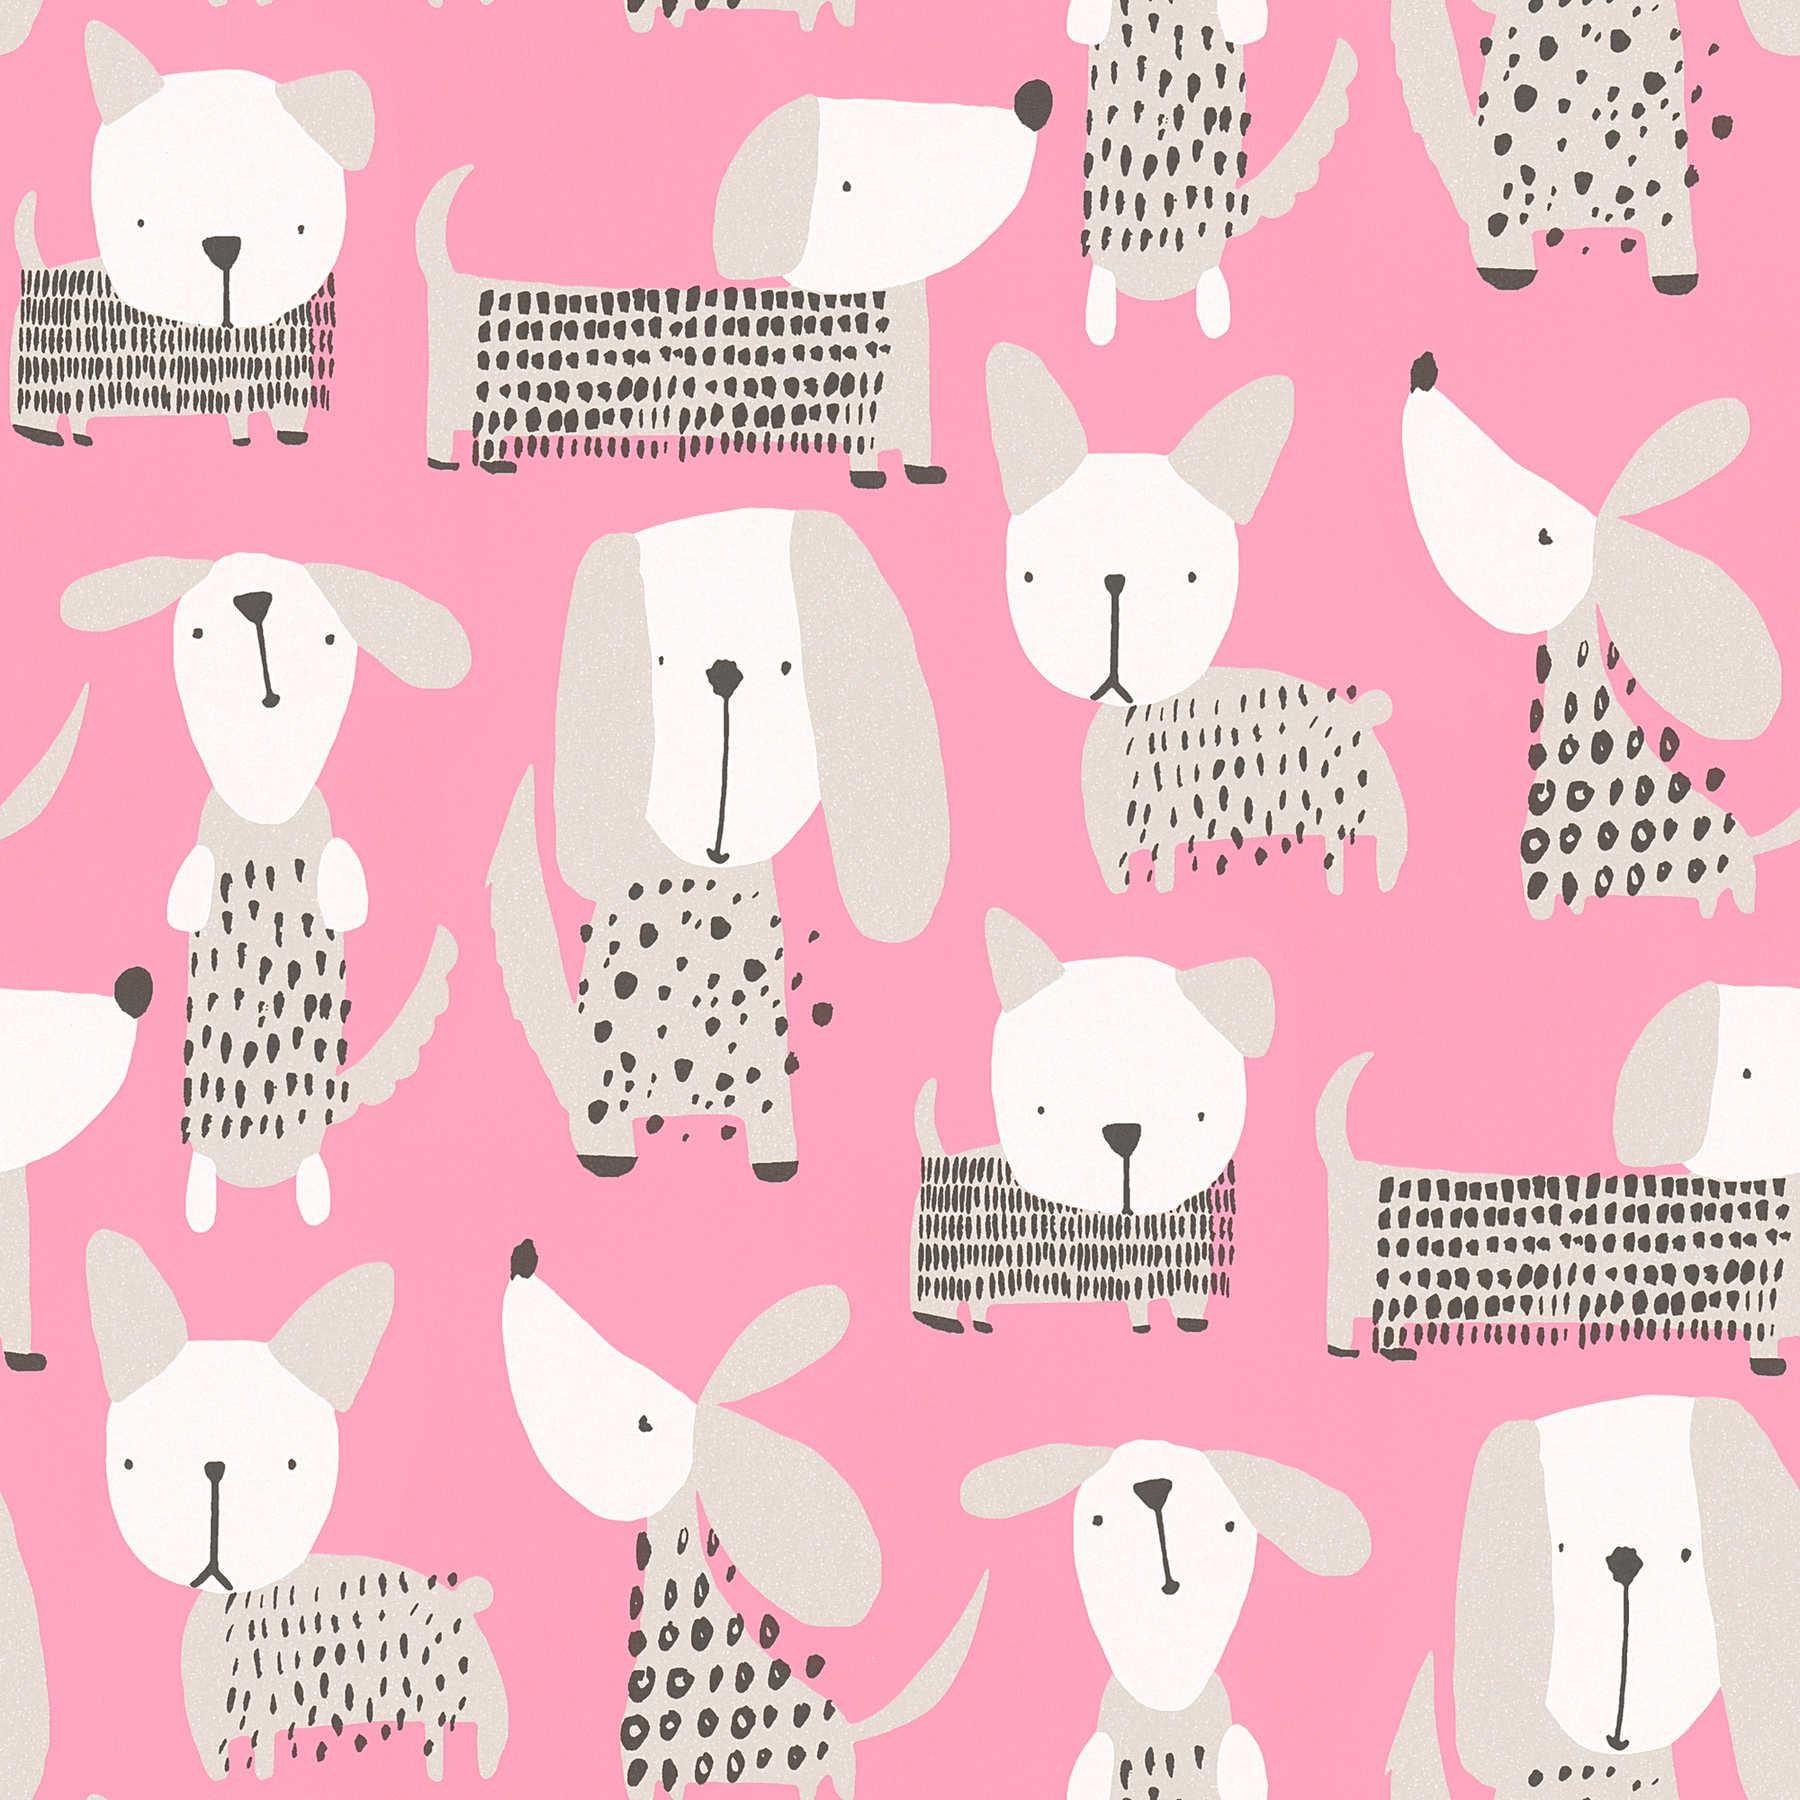         Hondenbehang in komische stijl voor kinderkamer - roze, wit
    